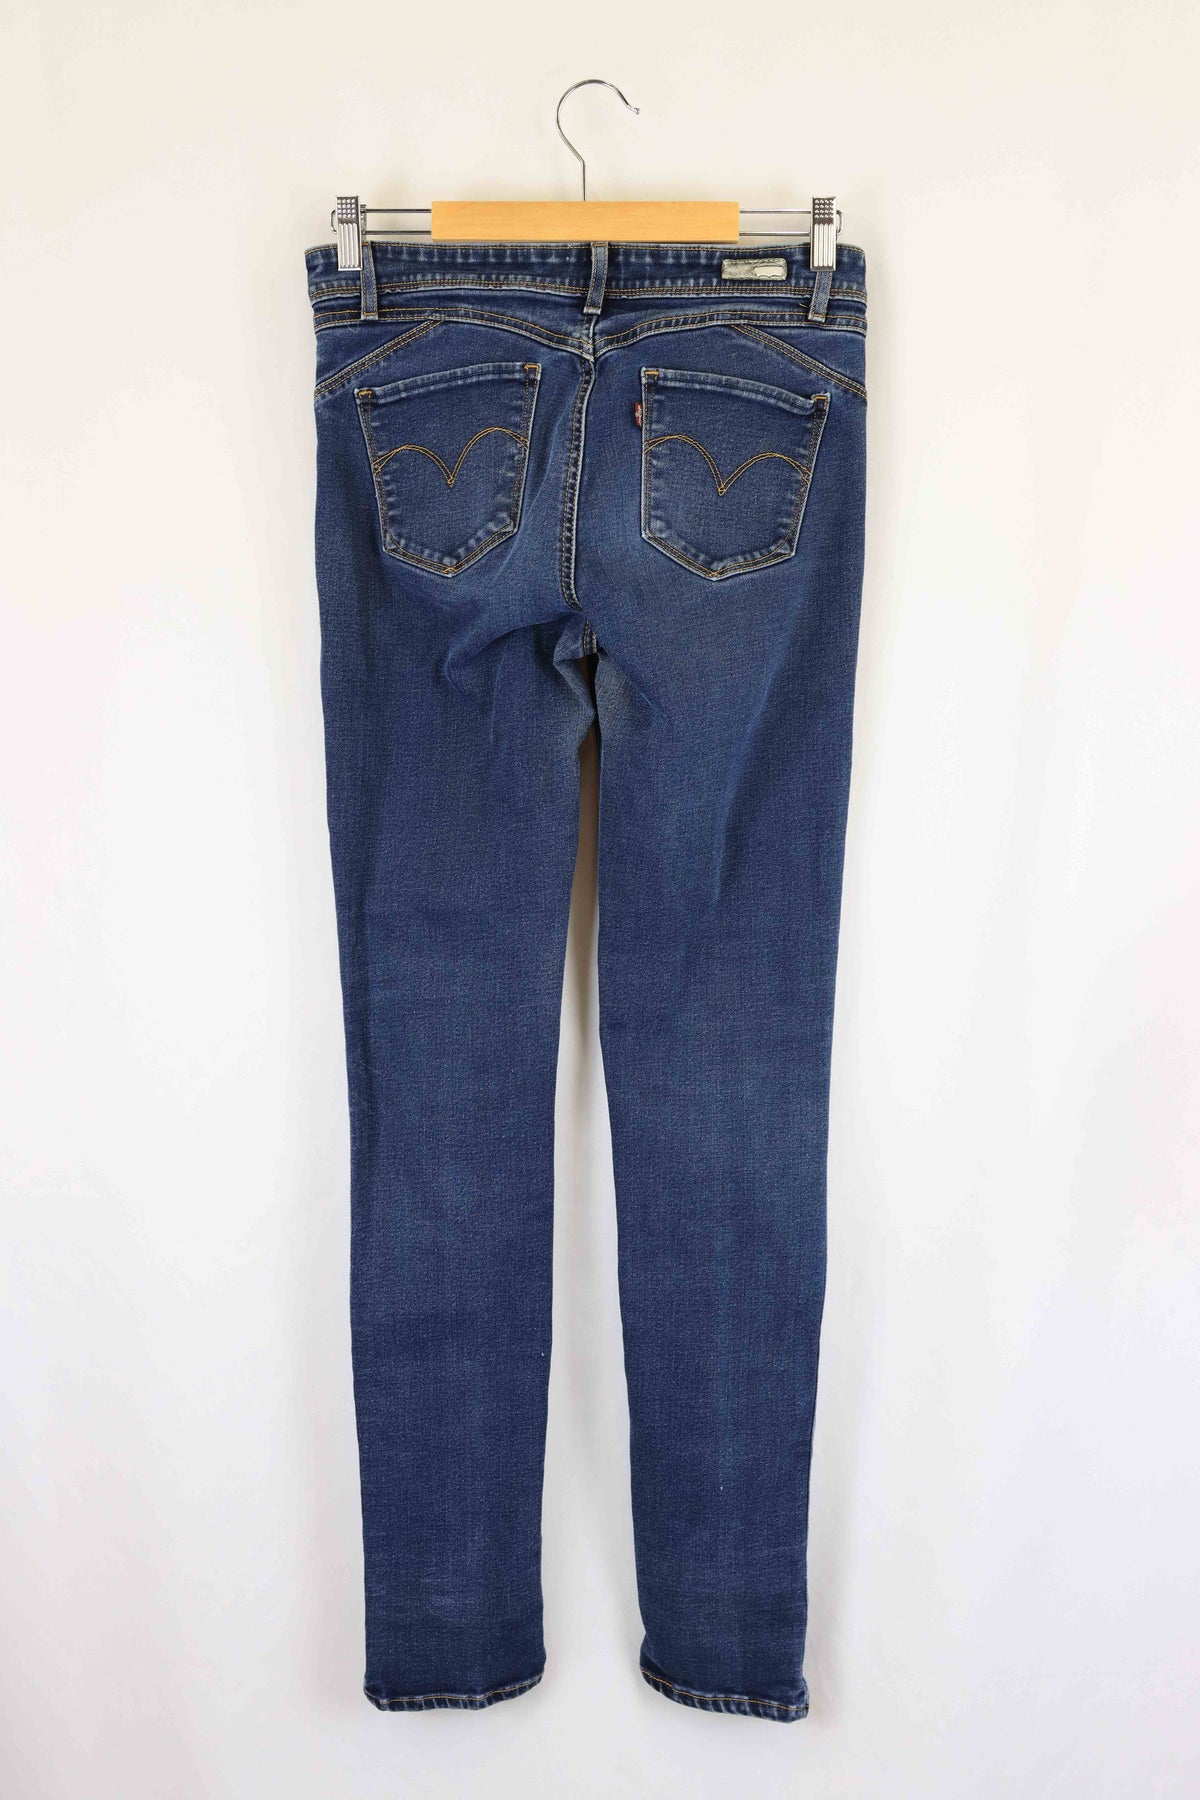 Levis Blue Jeans 12